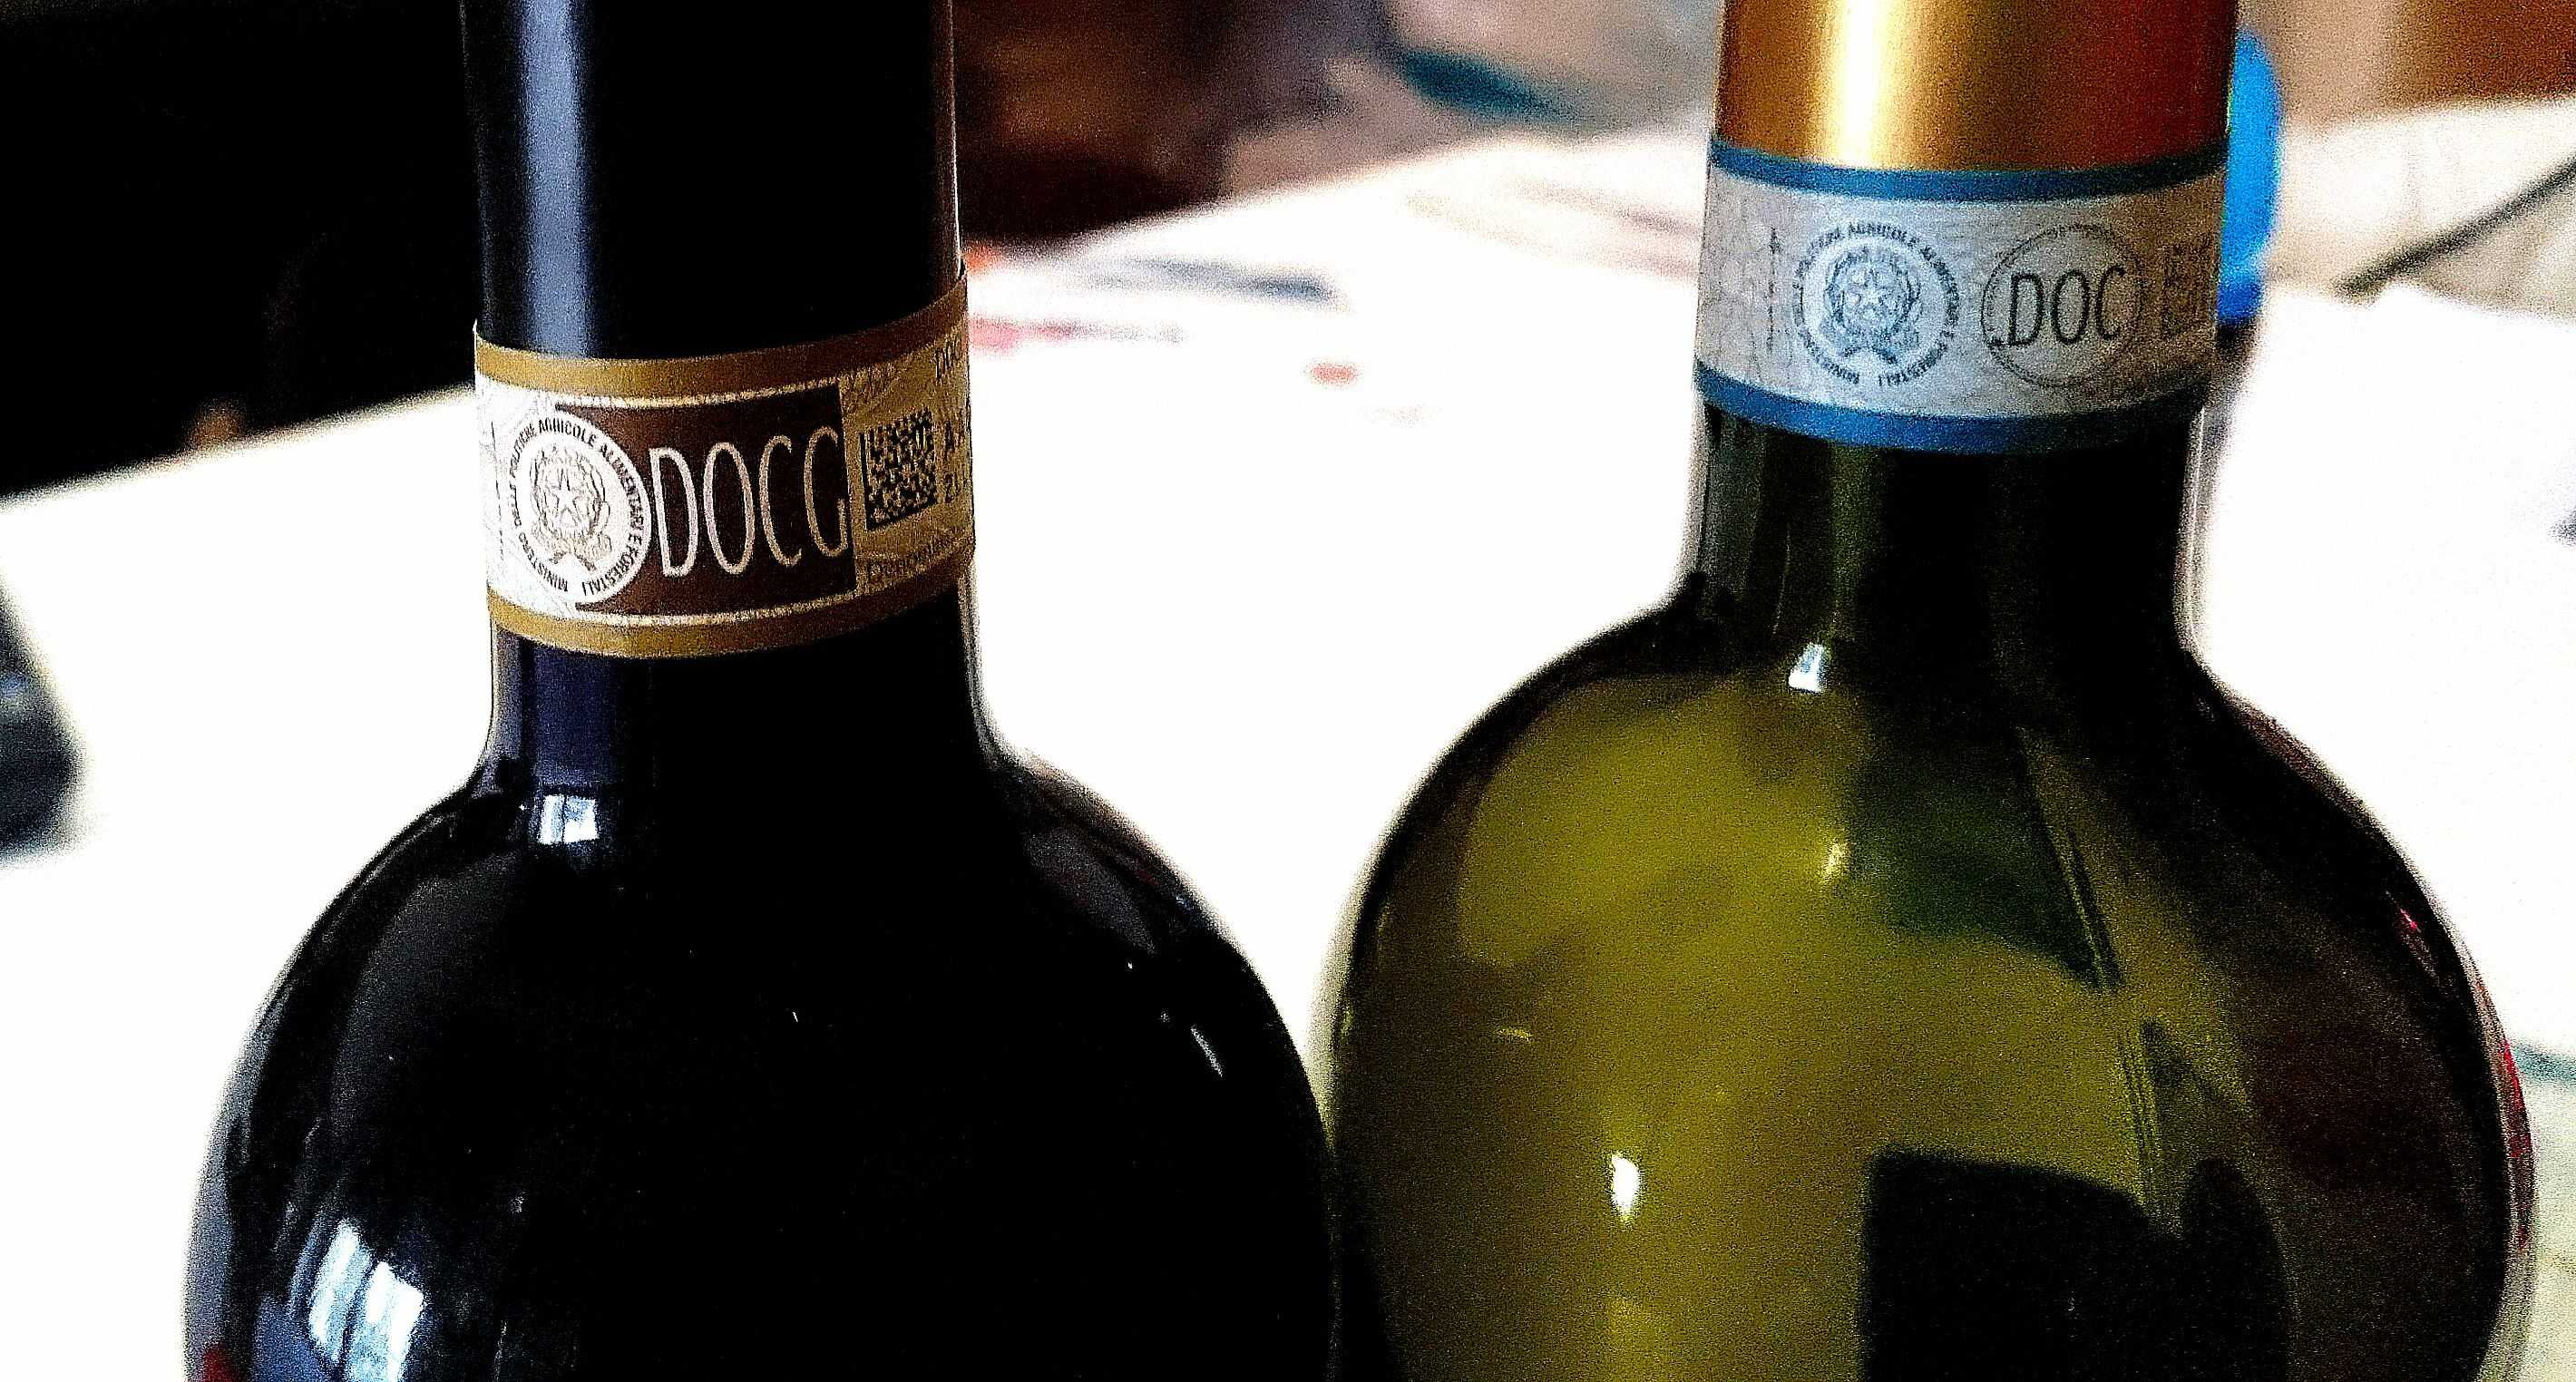 История итальянского виноделия, классификация вин в Италии Рейтинг лучших красных и белых итальянских вин, их достоинства и недостатки